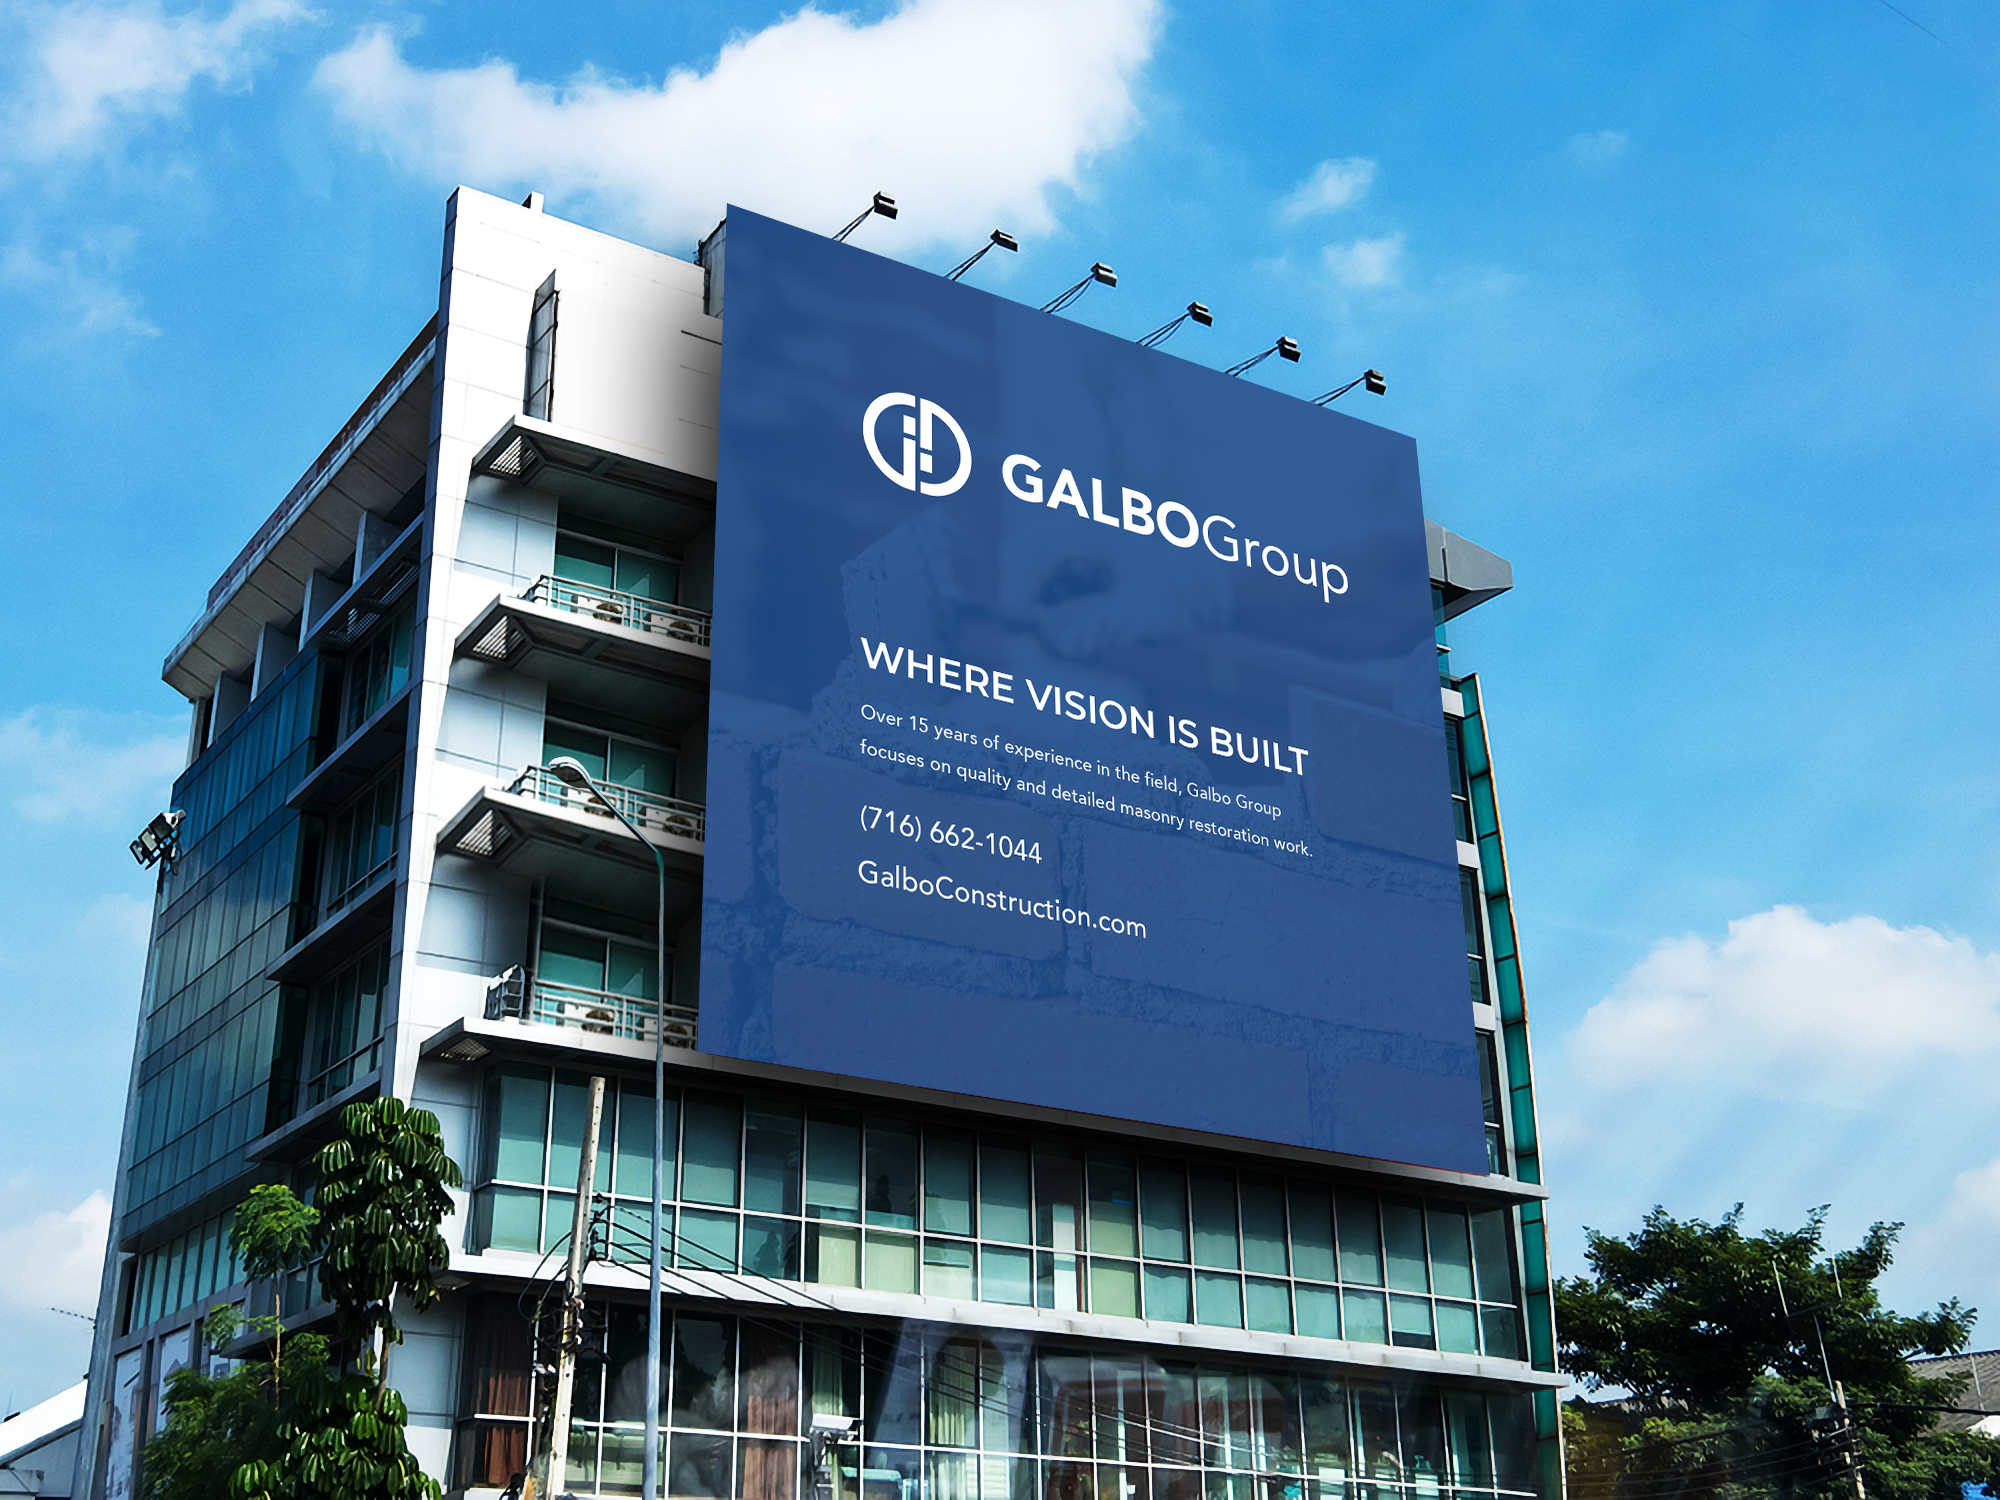 Galbo+Outdoor+Advertisement+Building+Billboard+Mockup+2.png